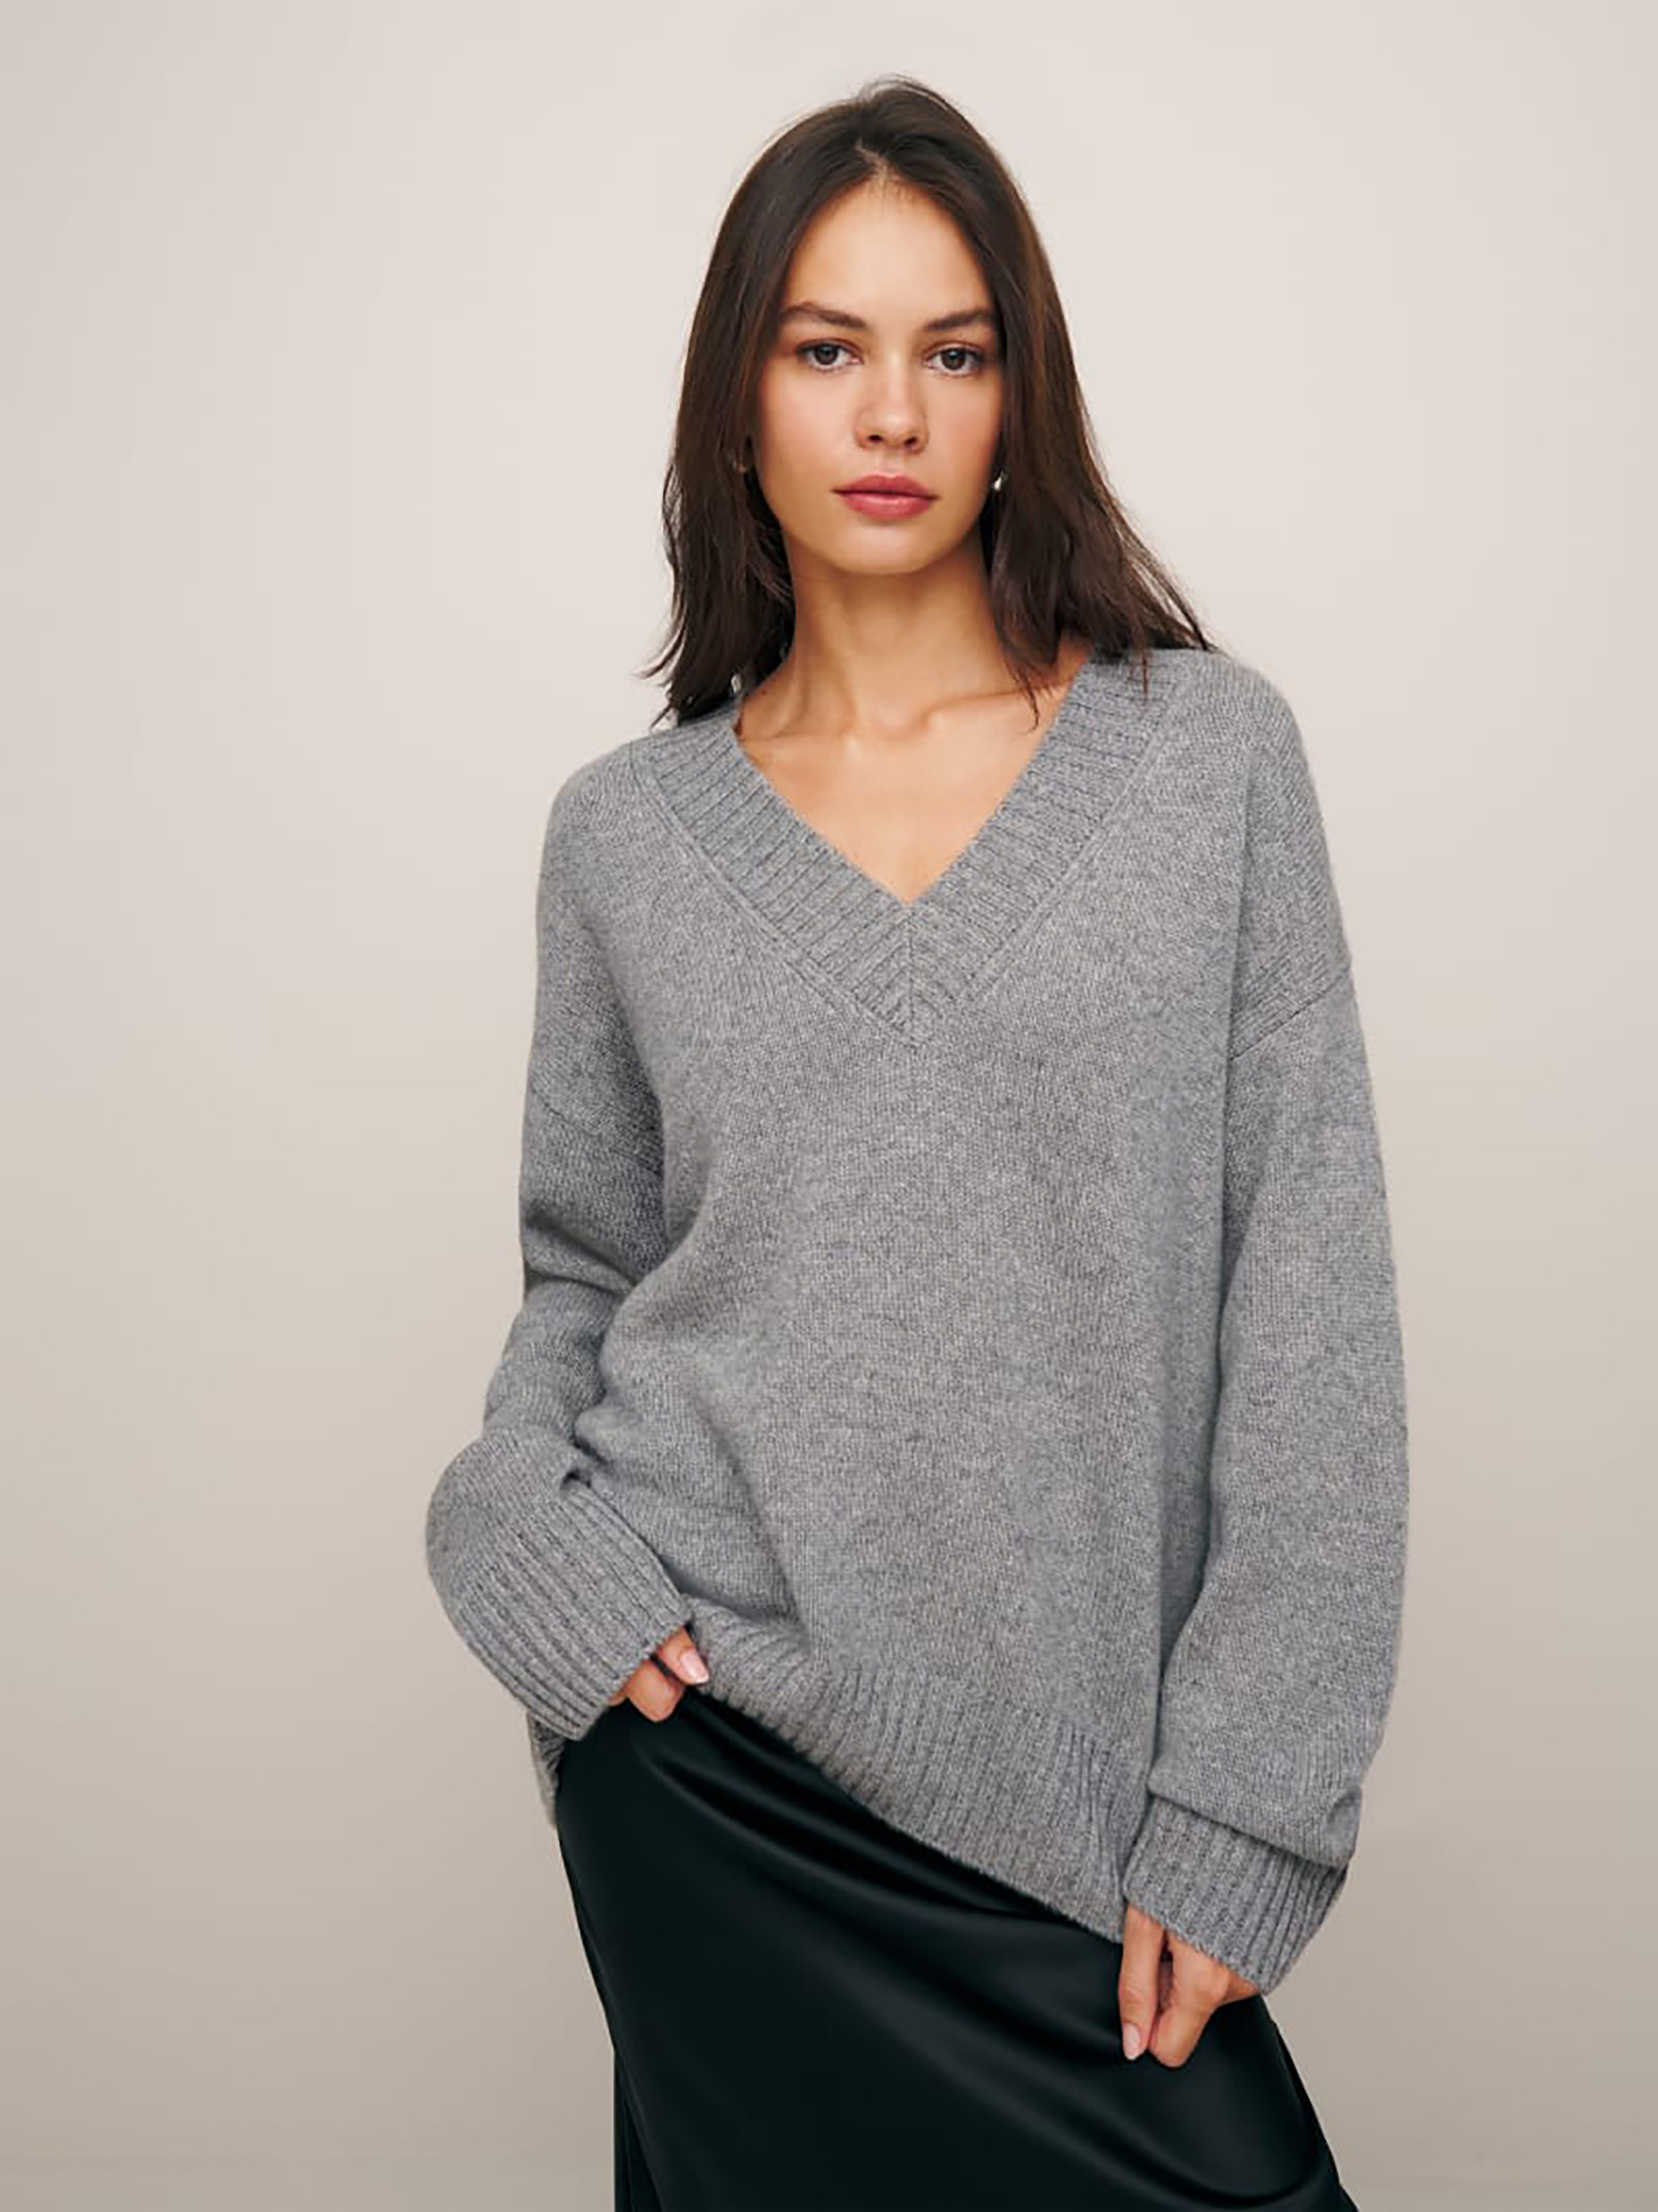 Ein Model in einem grauen Pullover